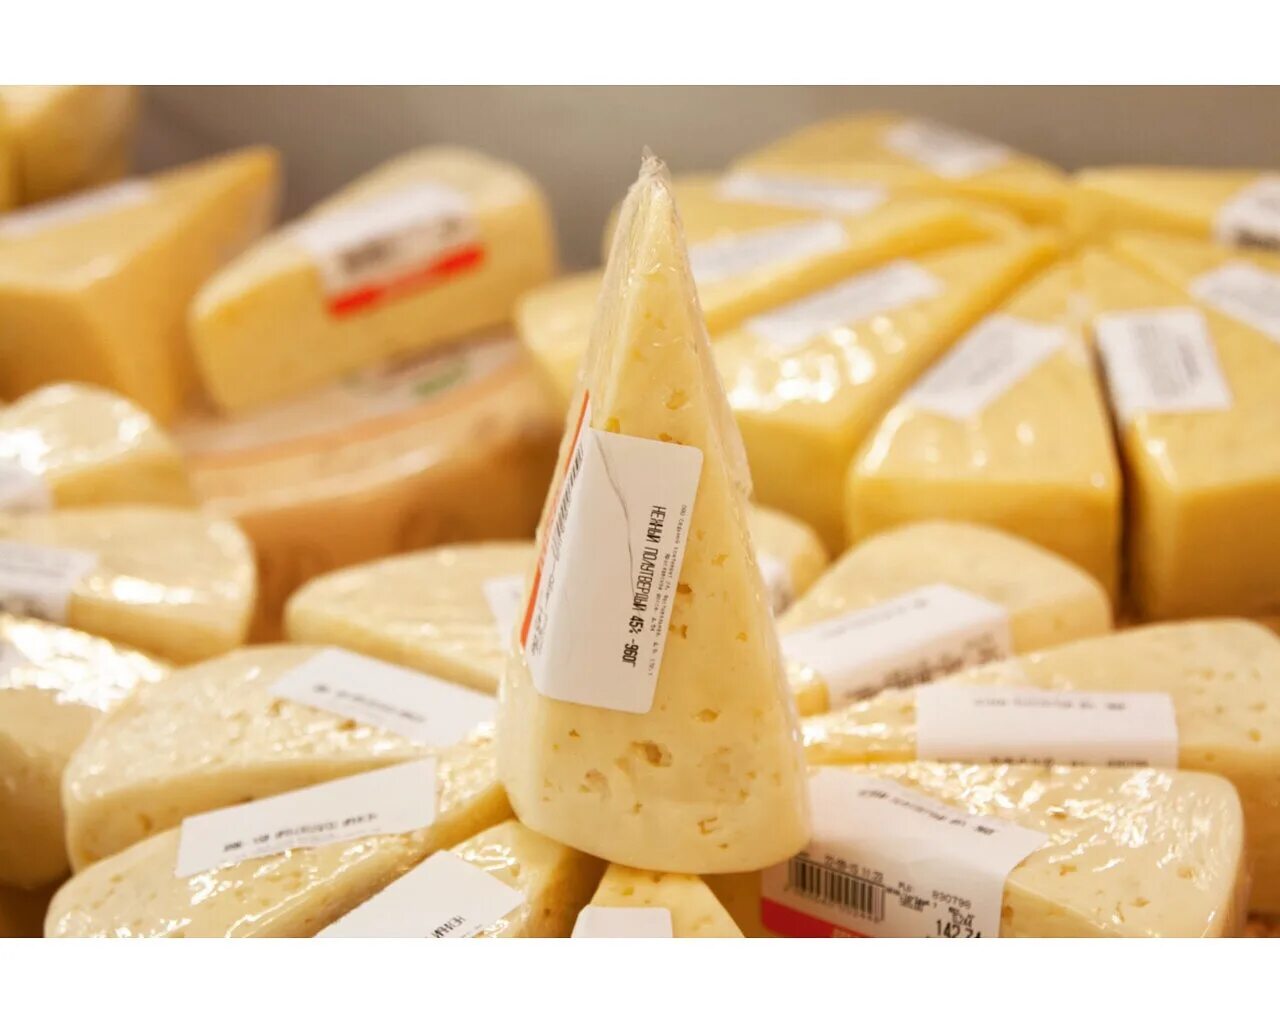 Сыр фасованный. Сыры фасованные. Упаковка сыра. Сыр в упаковке. Какой купить сыр для сырного